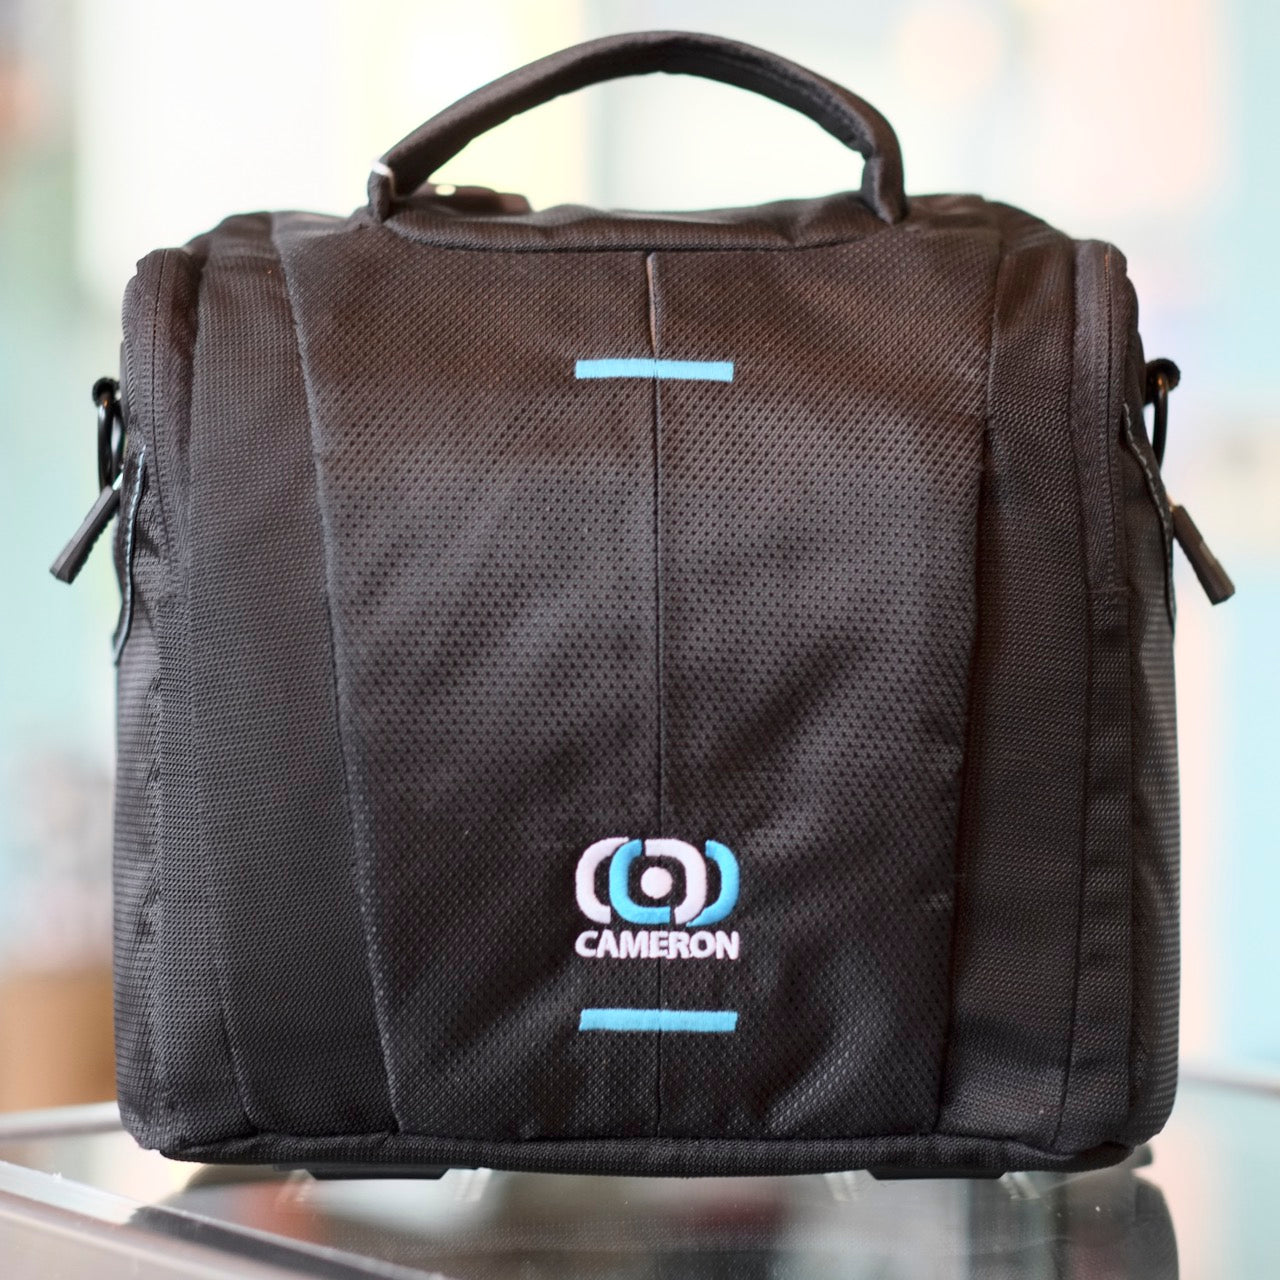 Cameron Camera Bag